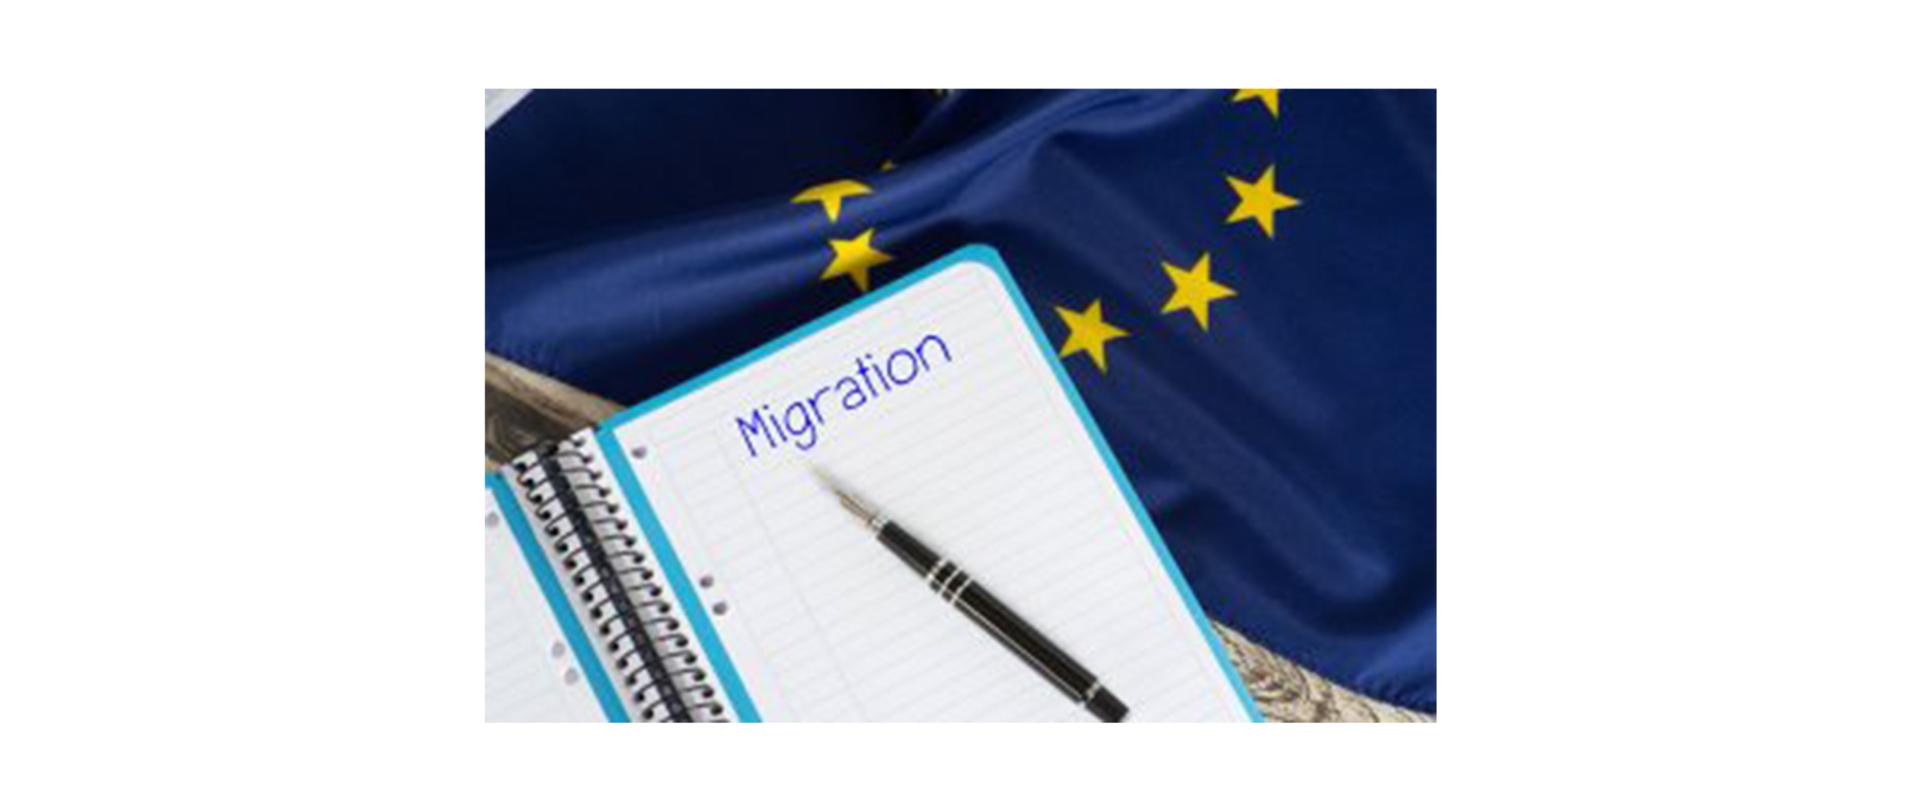 Na zdjęciu: notatnik z napisem "Migration"; leży na nim długopis. W tle flaga UE.